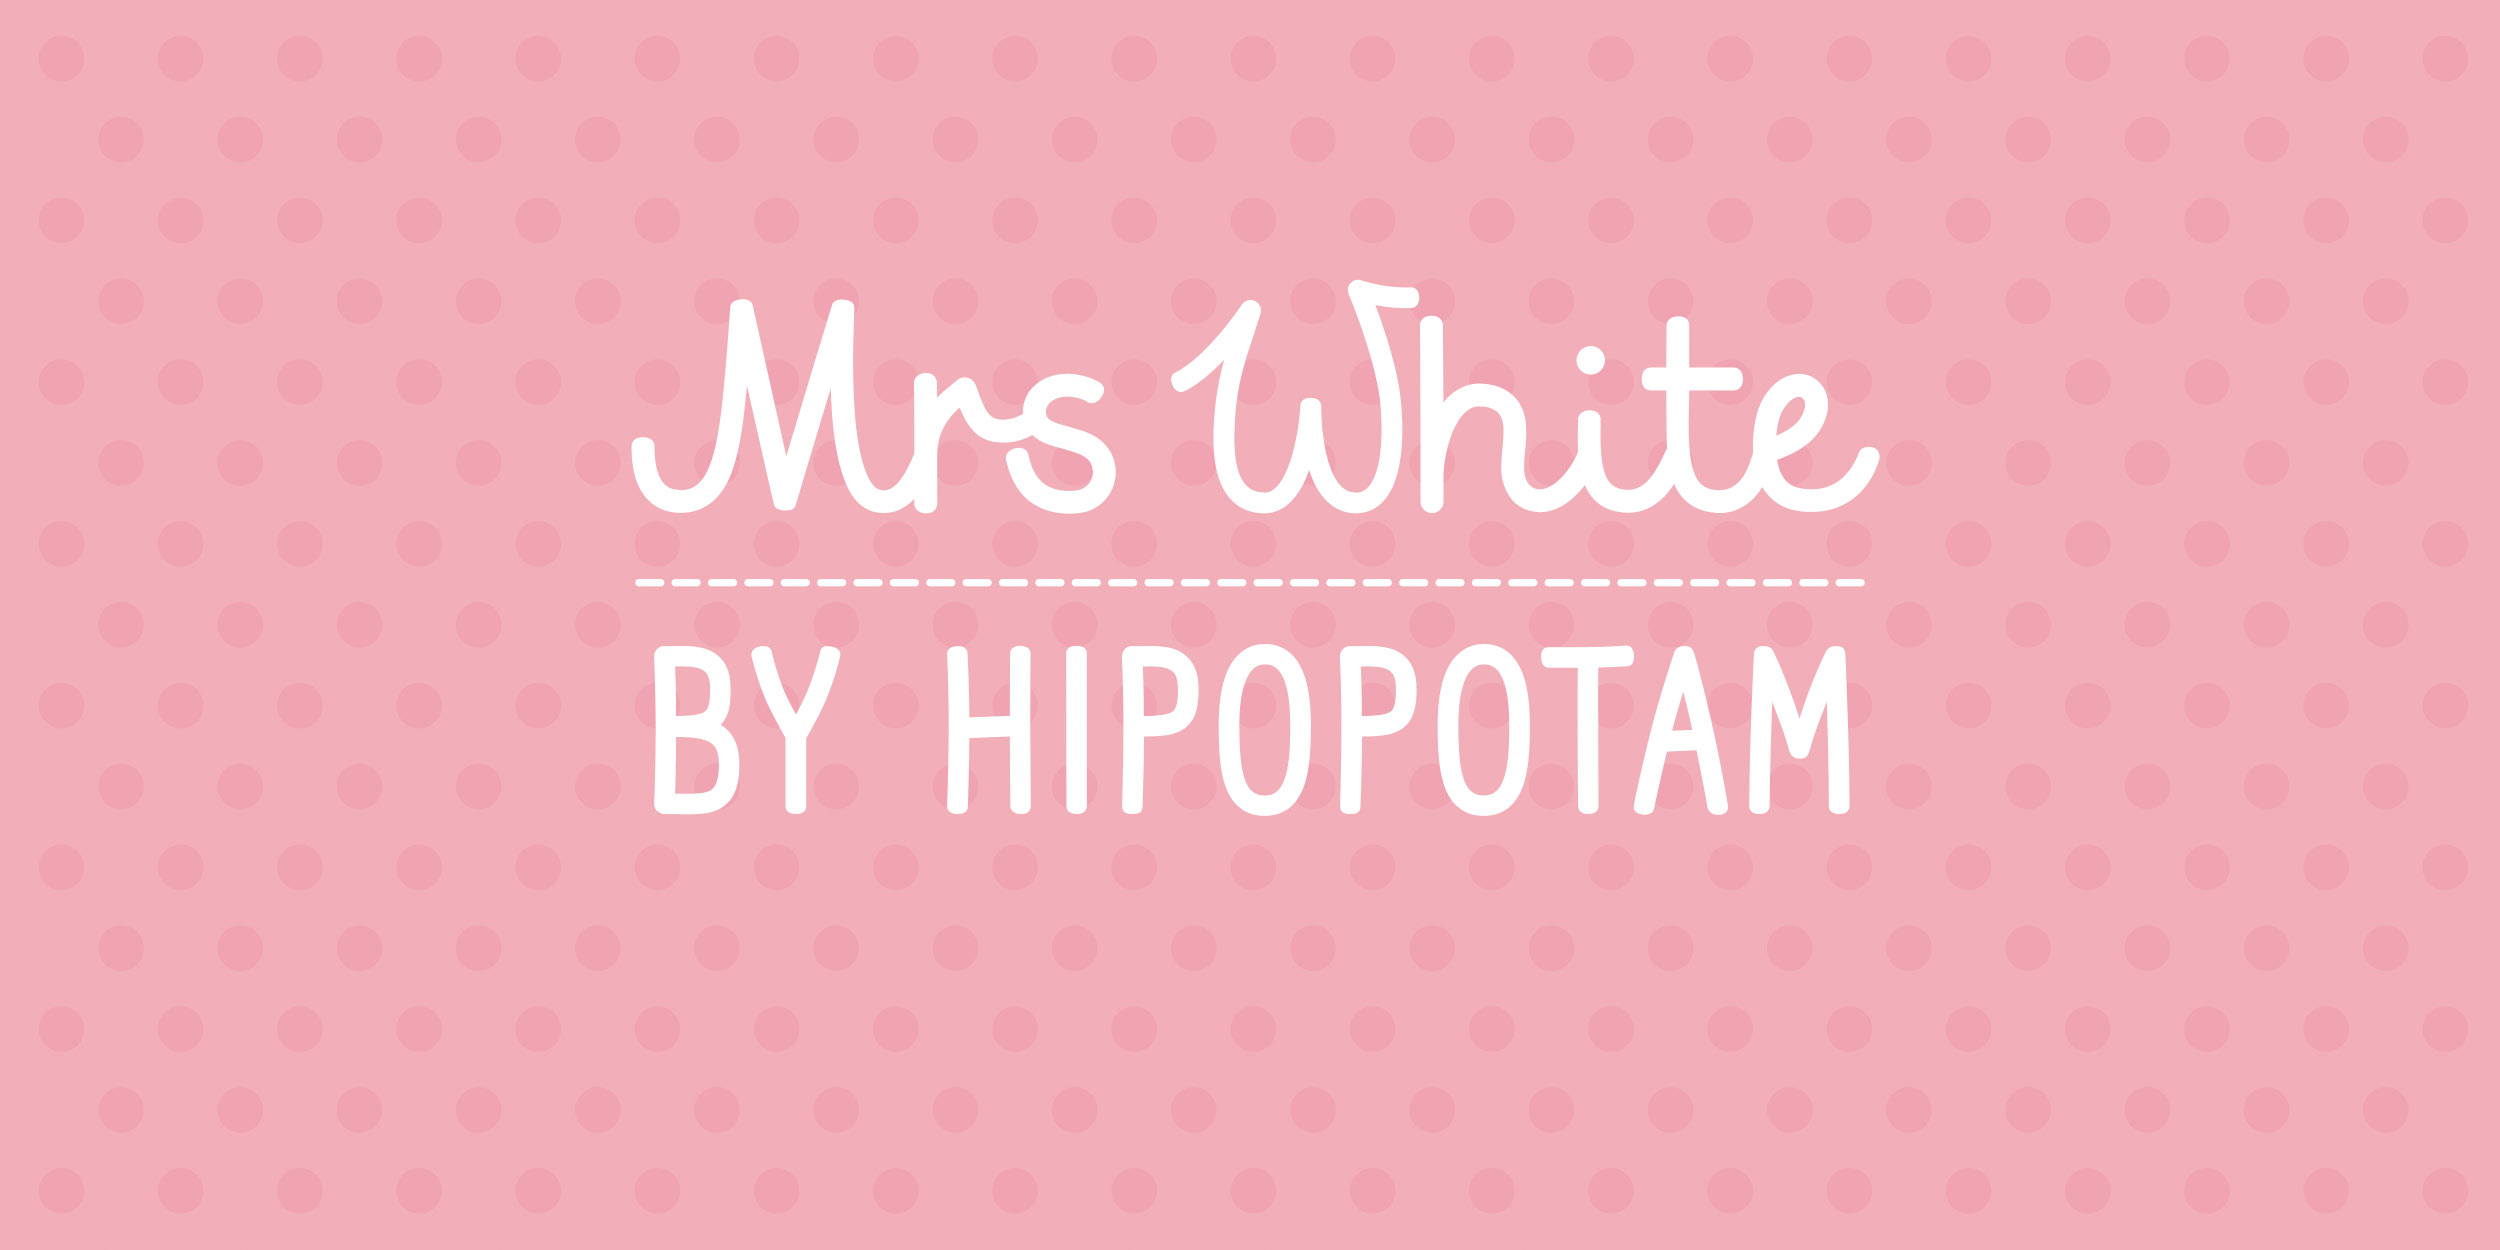 Mrs-White-1.jpg